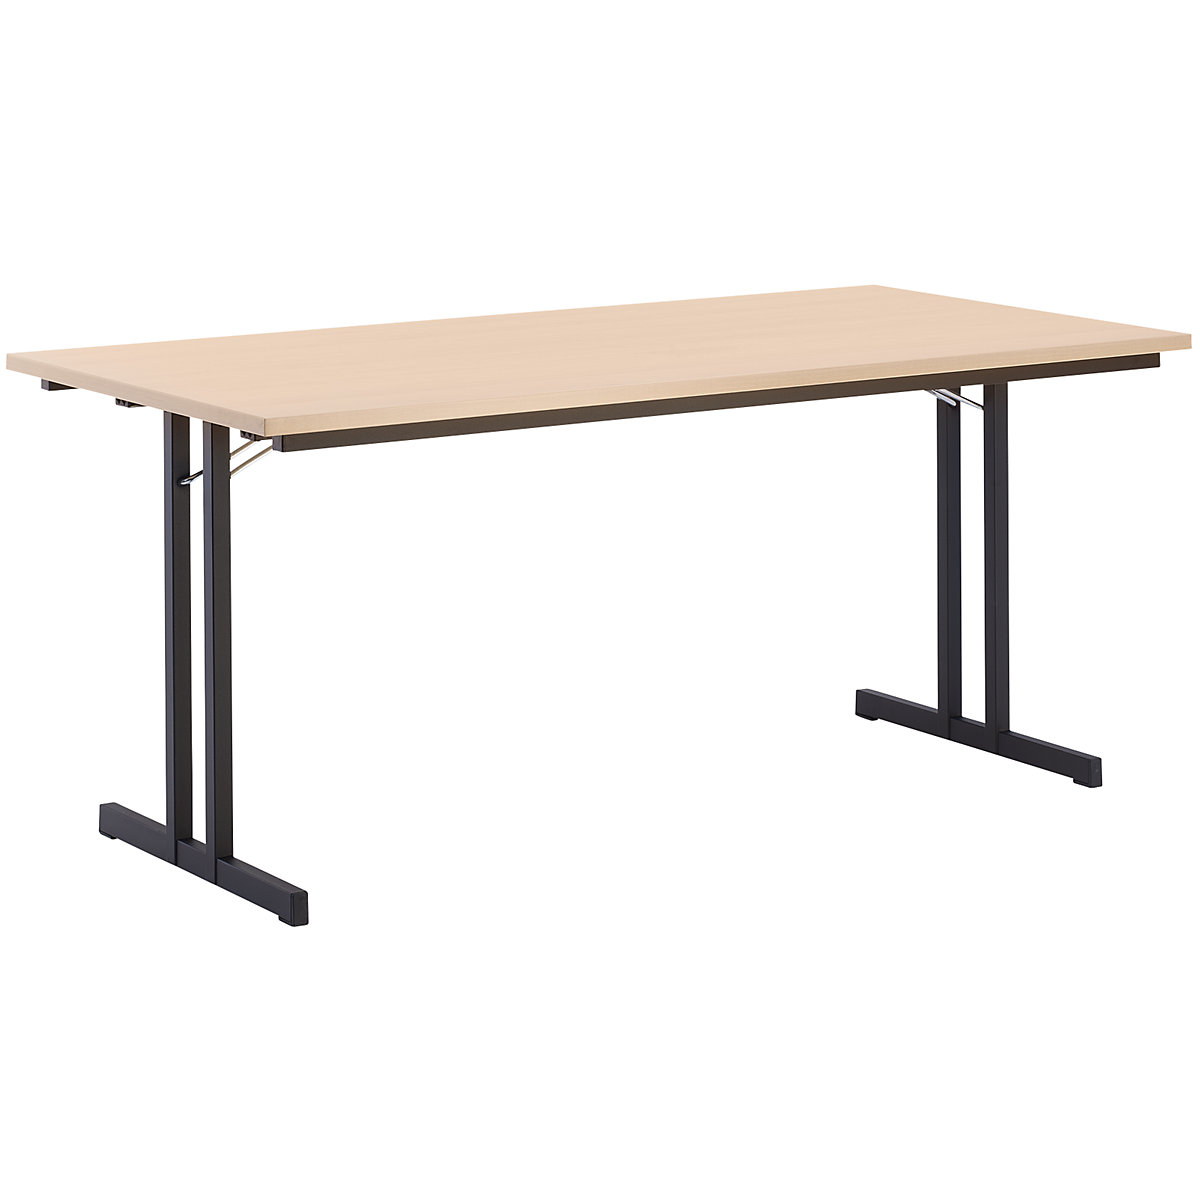 Sklápací stôl, s extra hrubou doskou, výška 720 mm, 1600 x 700 mm, podstavec čierna, doska vzor buk